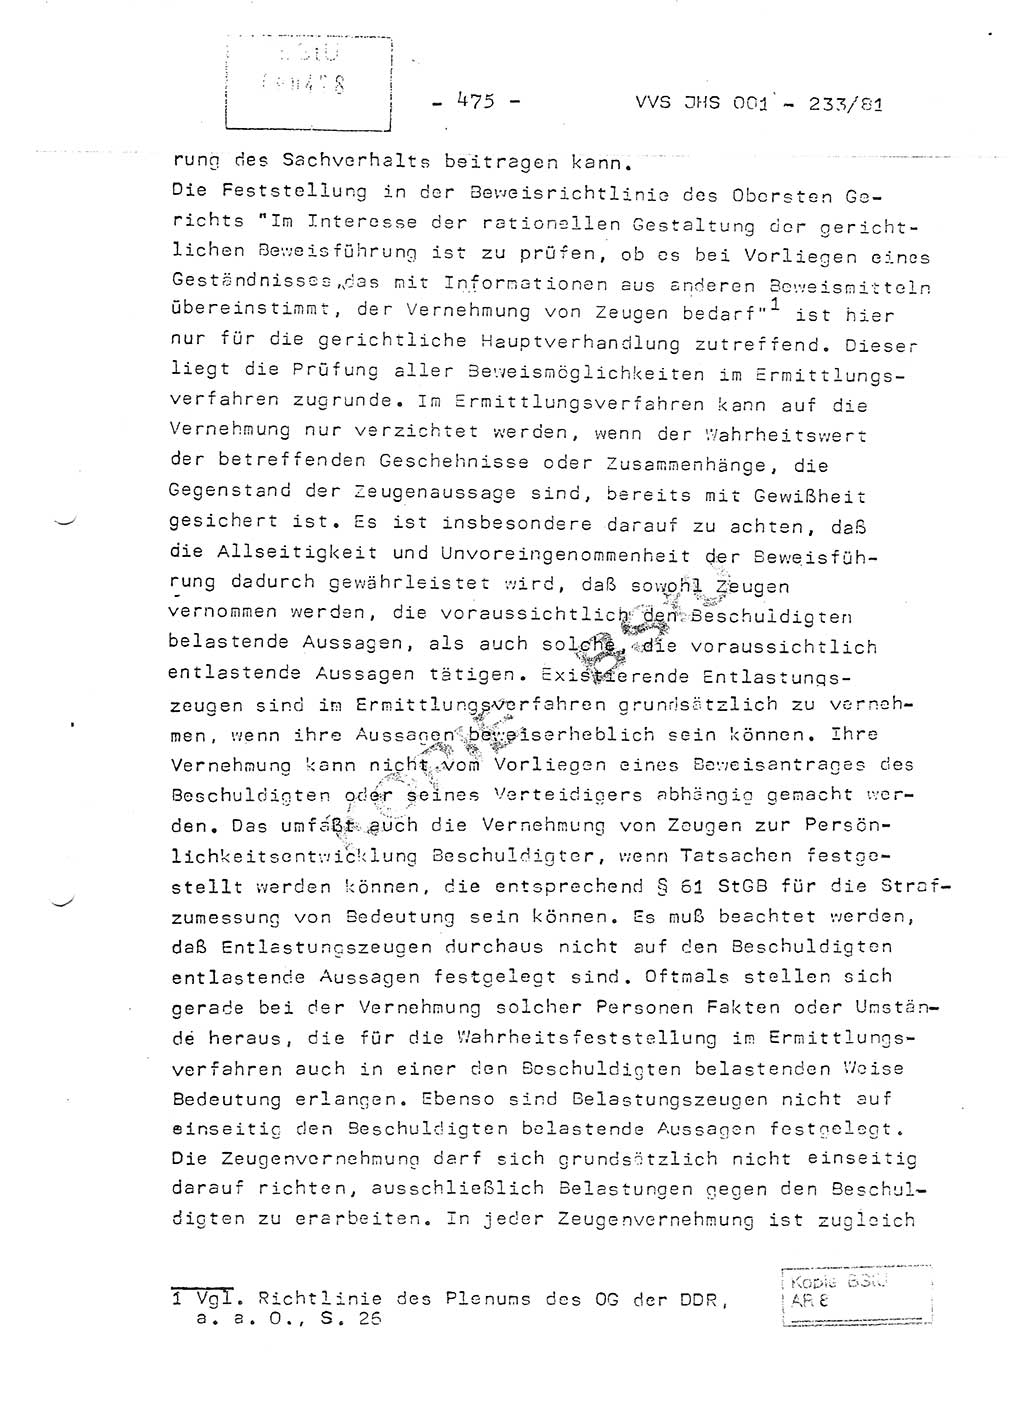 Dissertation Oberstleutnant Horst Zank (JHS), Oberstleutnant Dr. Karl-Heinz Knoblauch (JHS), Oberstleutnant Gustav-Adolf Kowalewski (HA Ⅸ), Oberstleutnant Wolfgang Plötner (HA Ⅸ), Ministerium für Staatssicherheit (MfS) [Deutsche Demokratische Republik (DDR)], Juristische Hochschule (JHS), Vertrauliche Verschlußsache (VVS) o001-233/81, Potsdam 1981, Blatt 475 (Diss. MfS DDR JHS VVS o001-233/81 1981, Bl. 475)